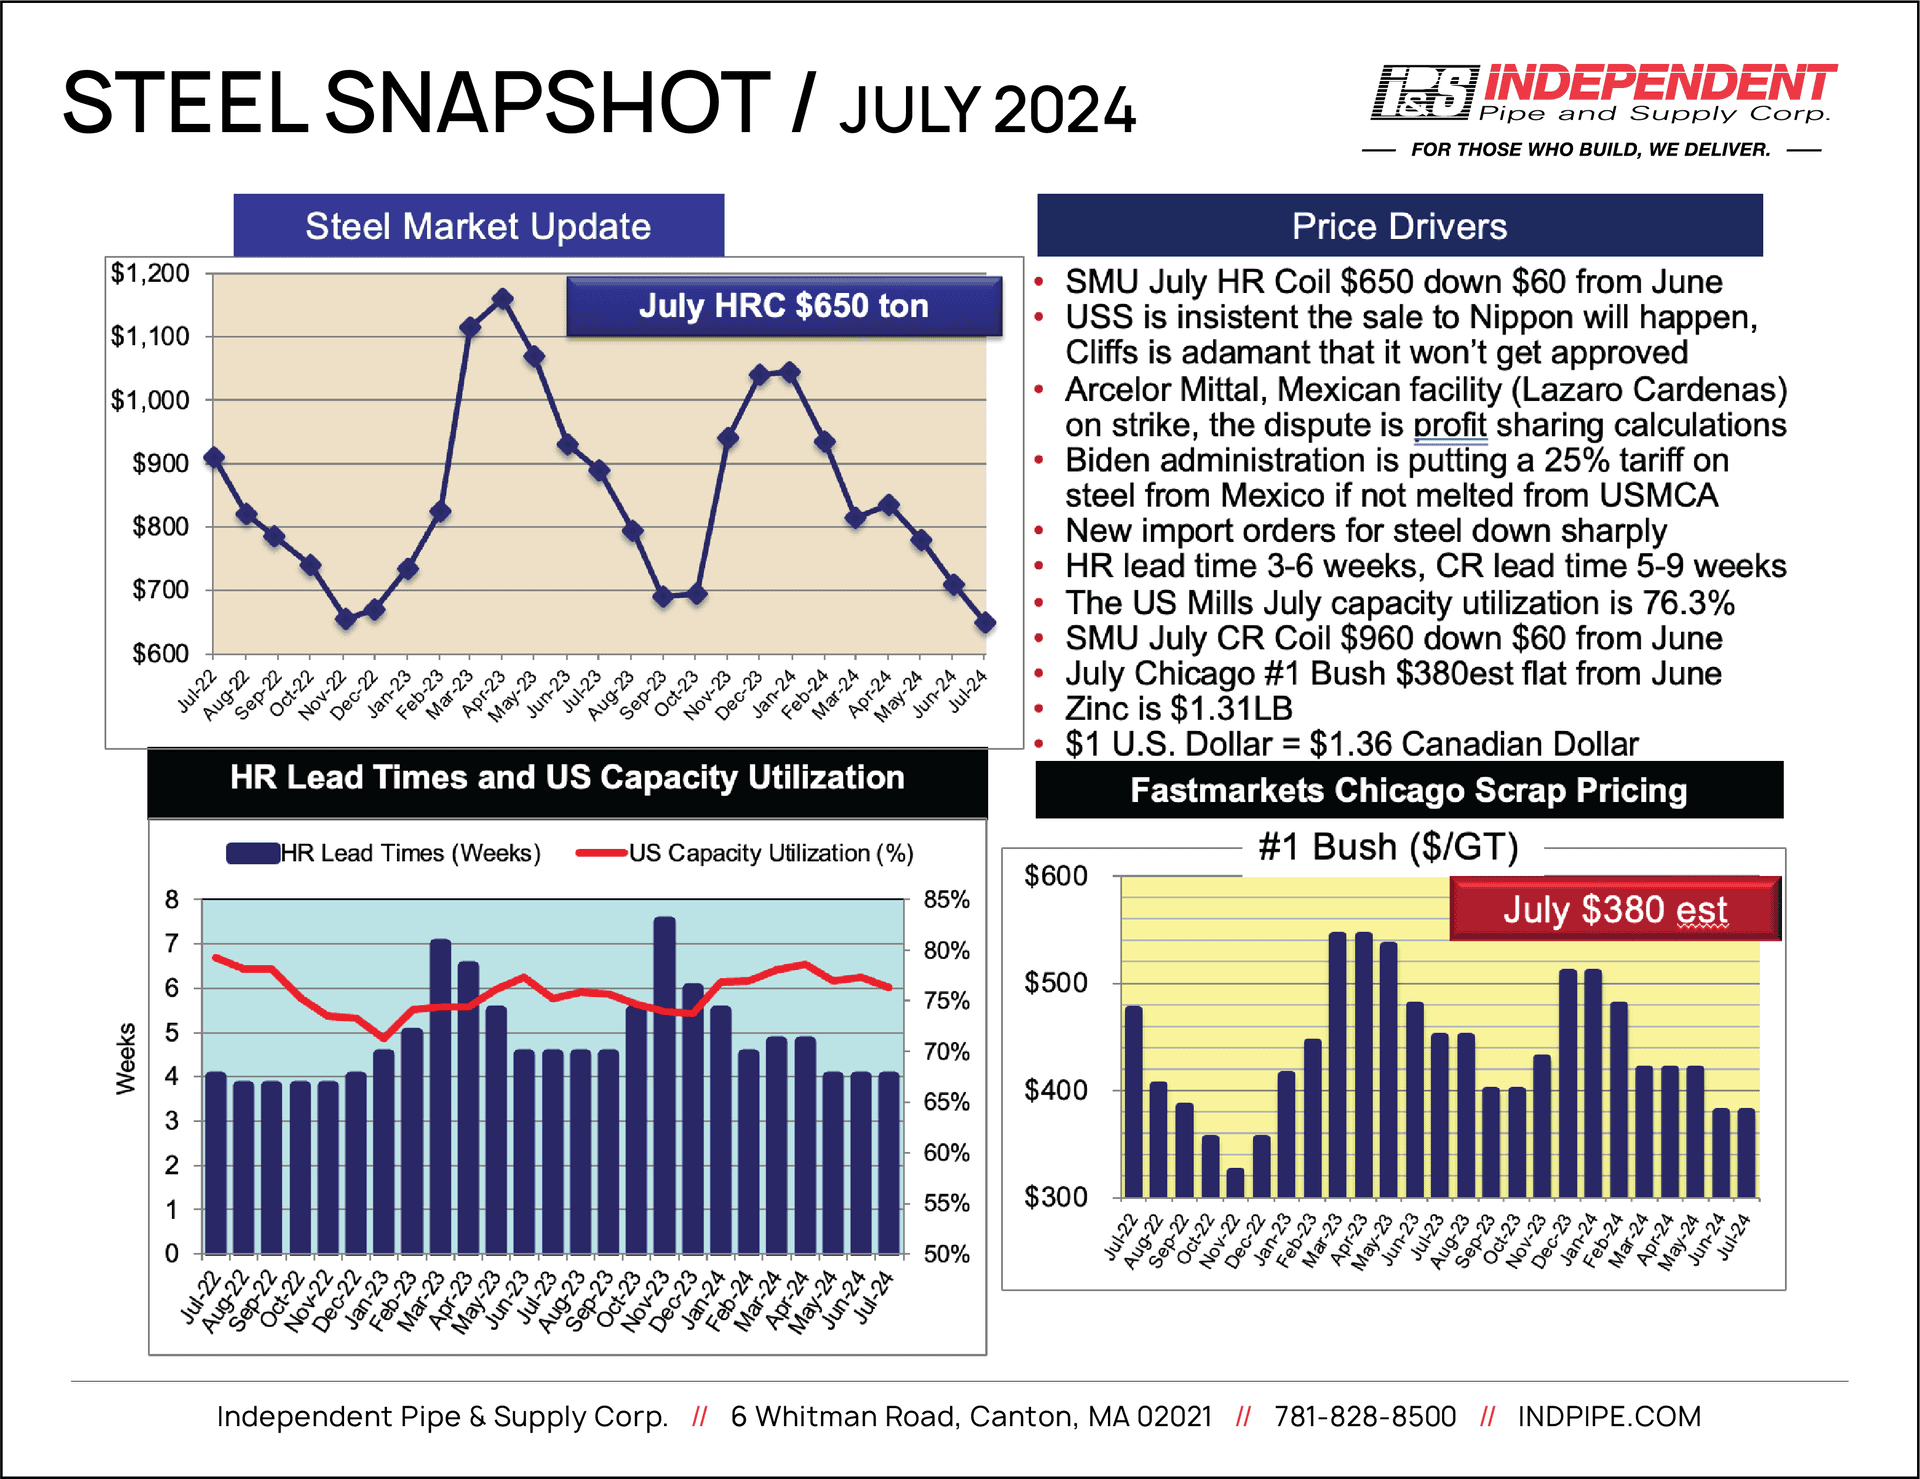 IPS Steel Snapshot JULY 2024